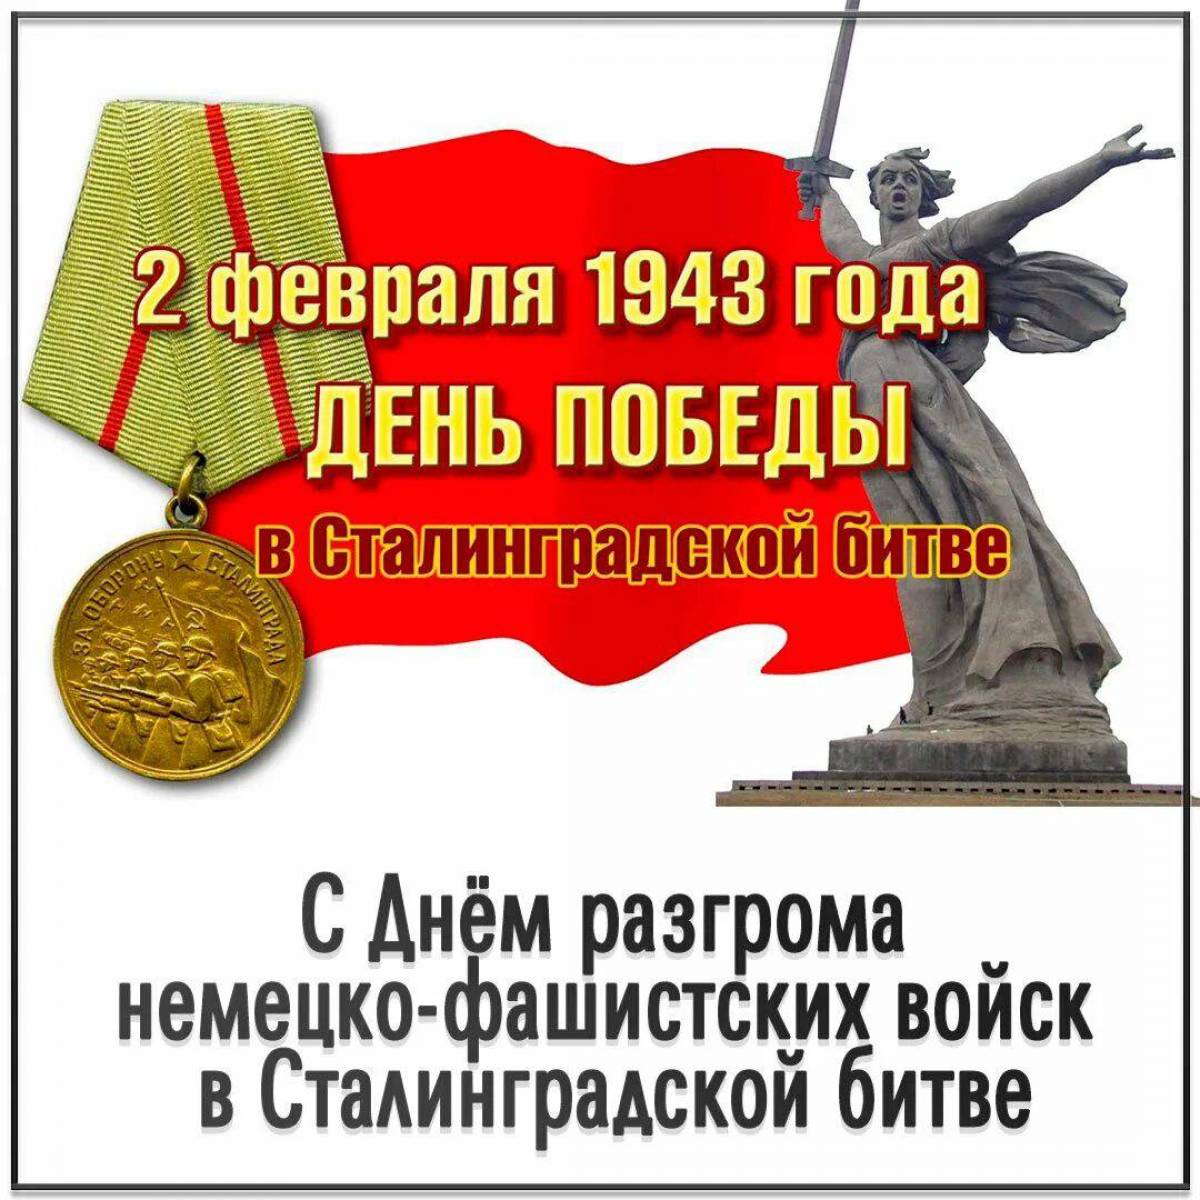 2 февраля сталинградская битва #32